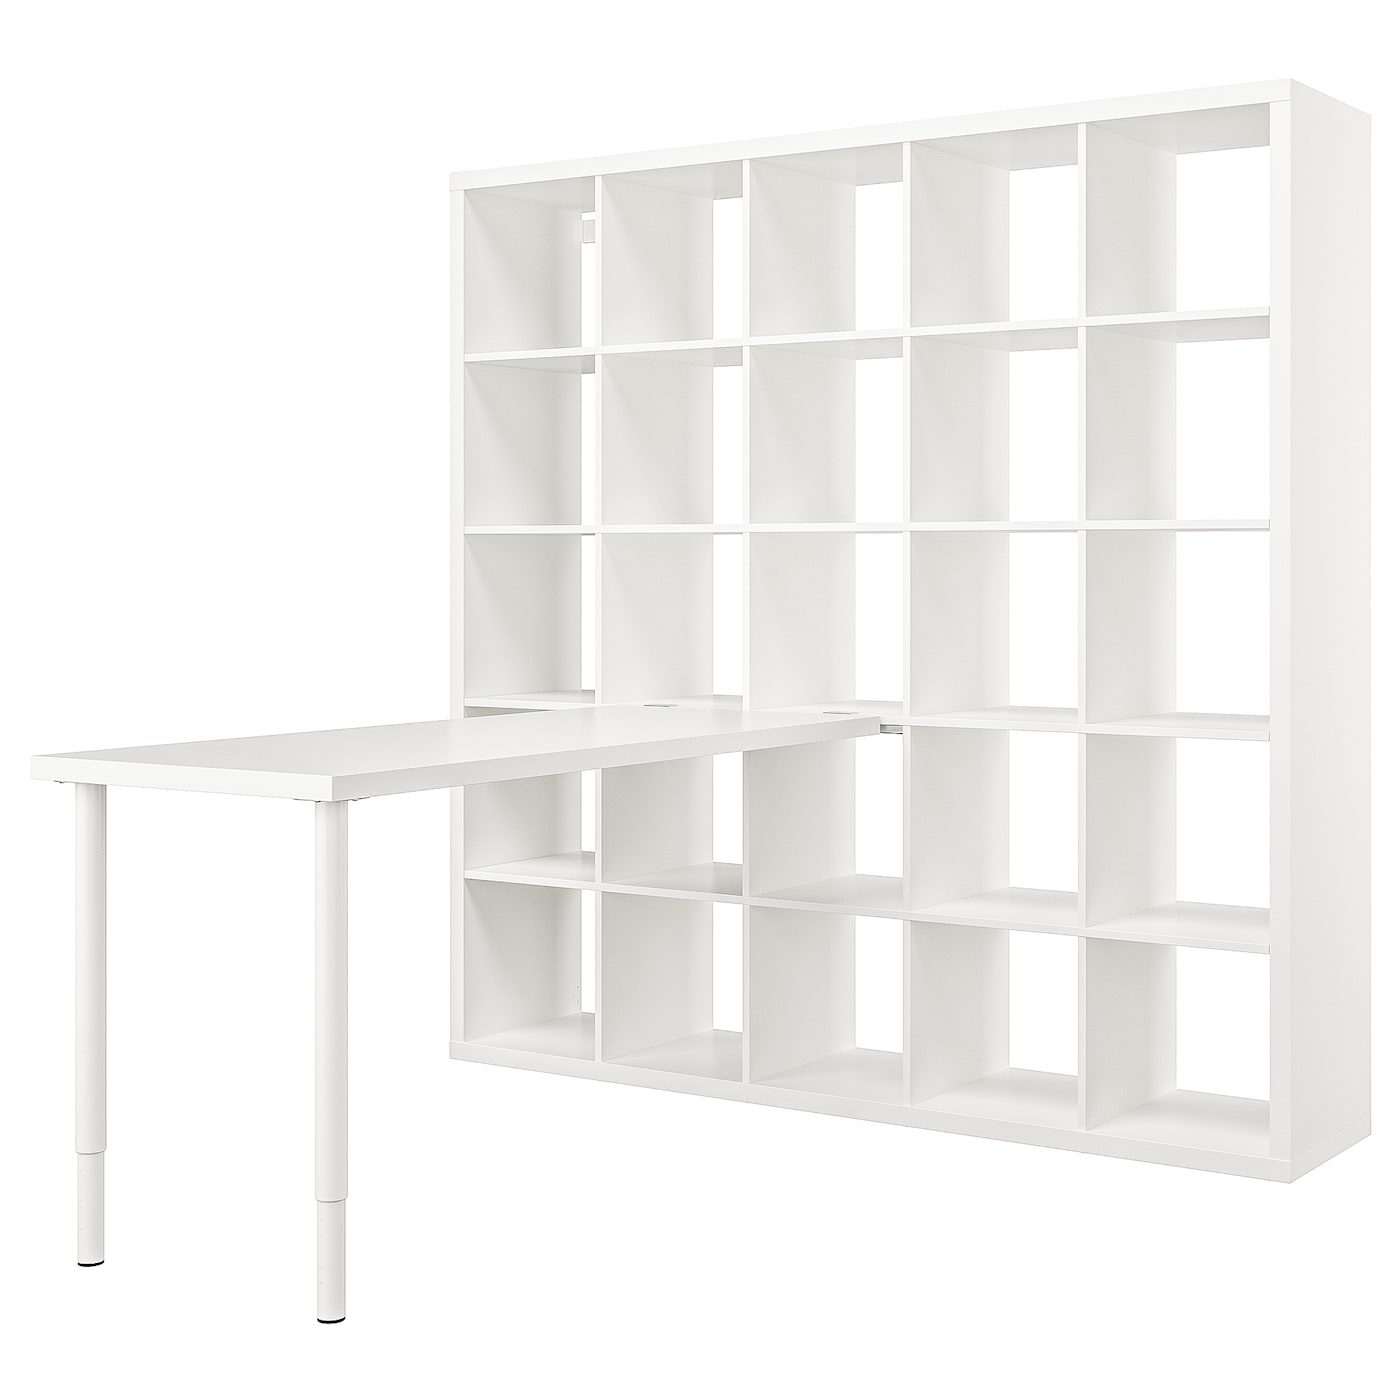 Письменный стол с книжной полкой 25 ячеек - IKEA LAGKAPTEN/KALLAX/ЛАГКАПТЕН/КАЛЛАКС ИКЕА, белый